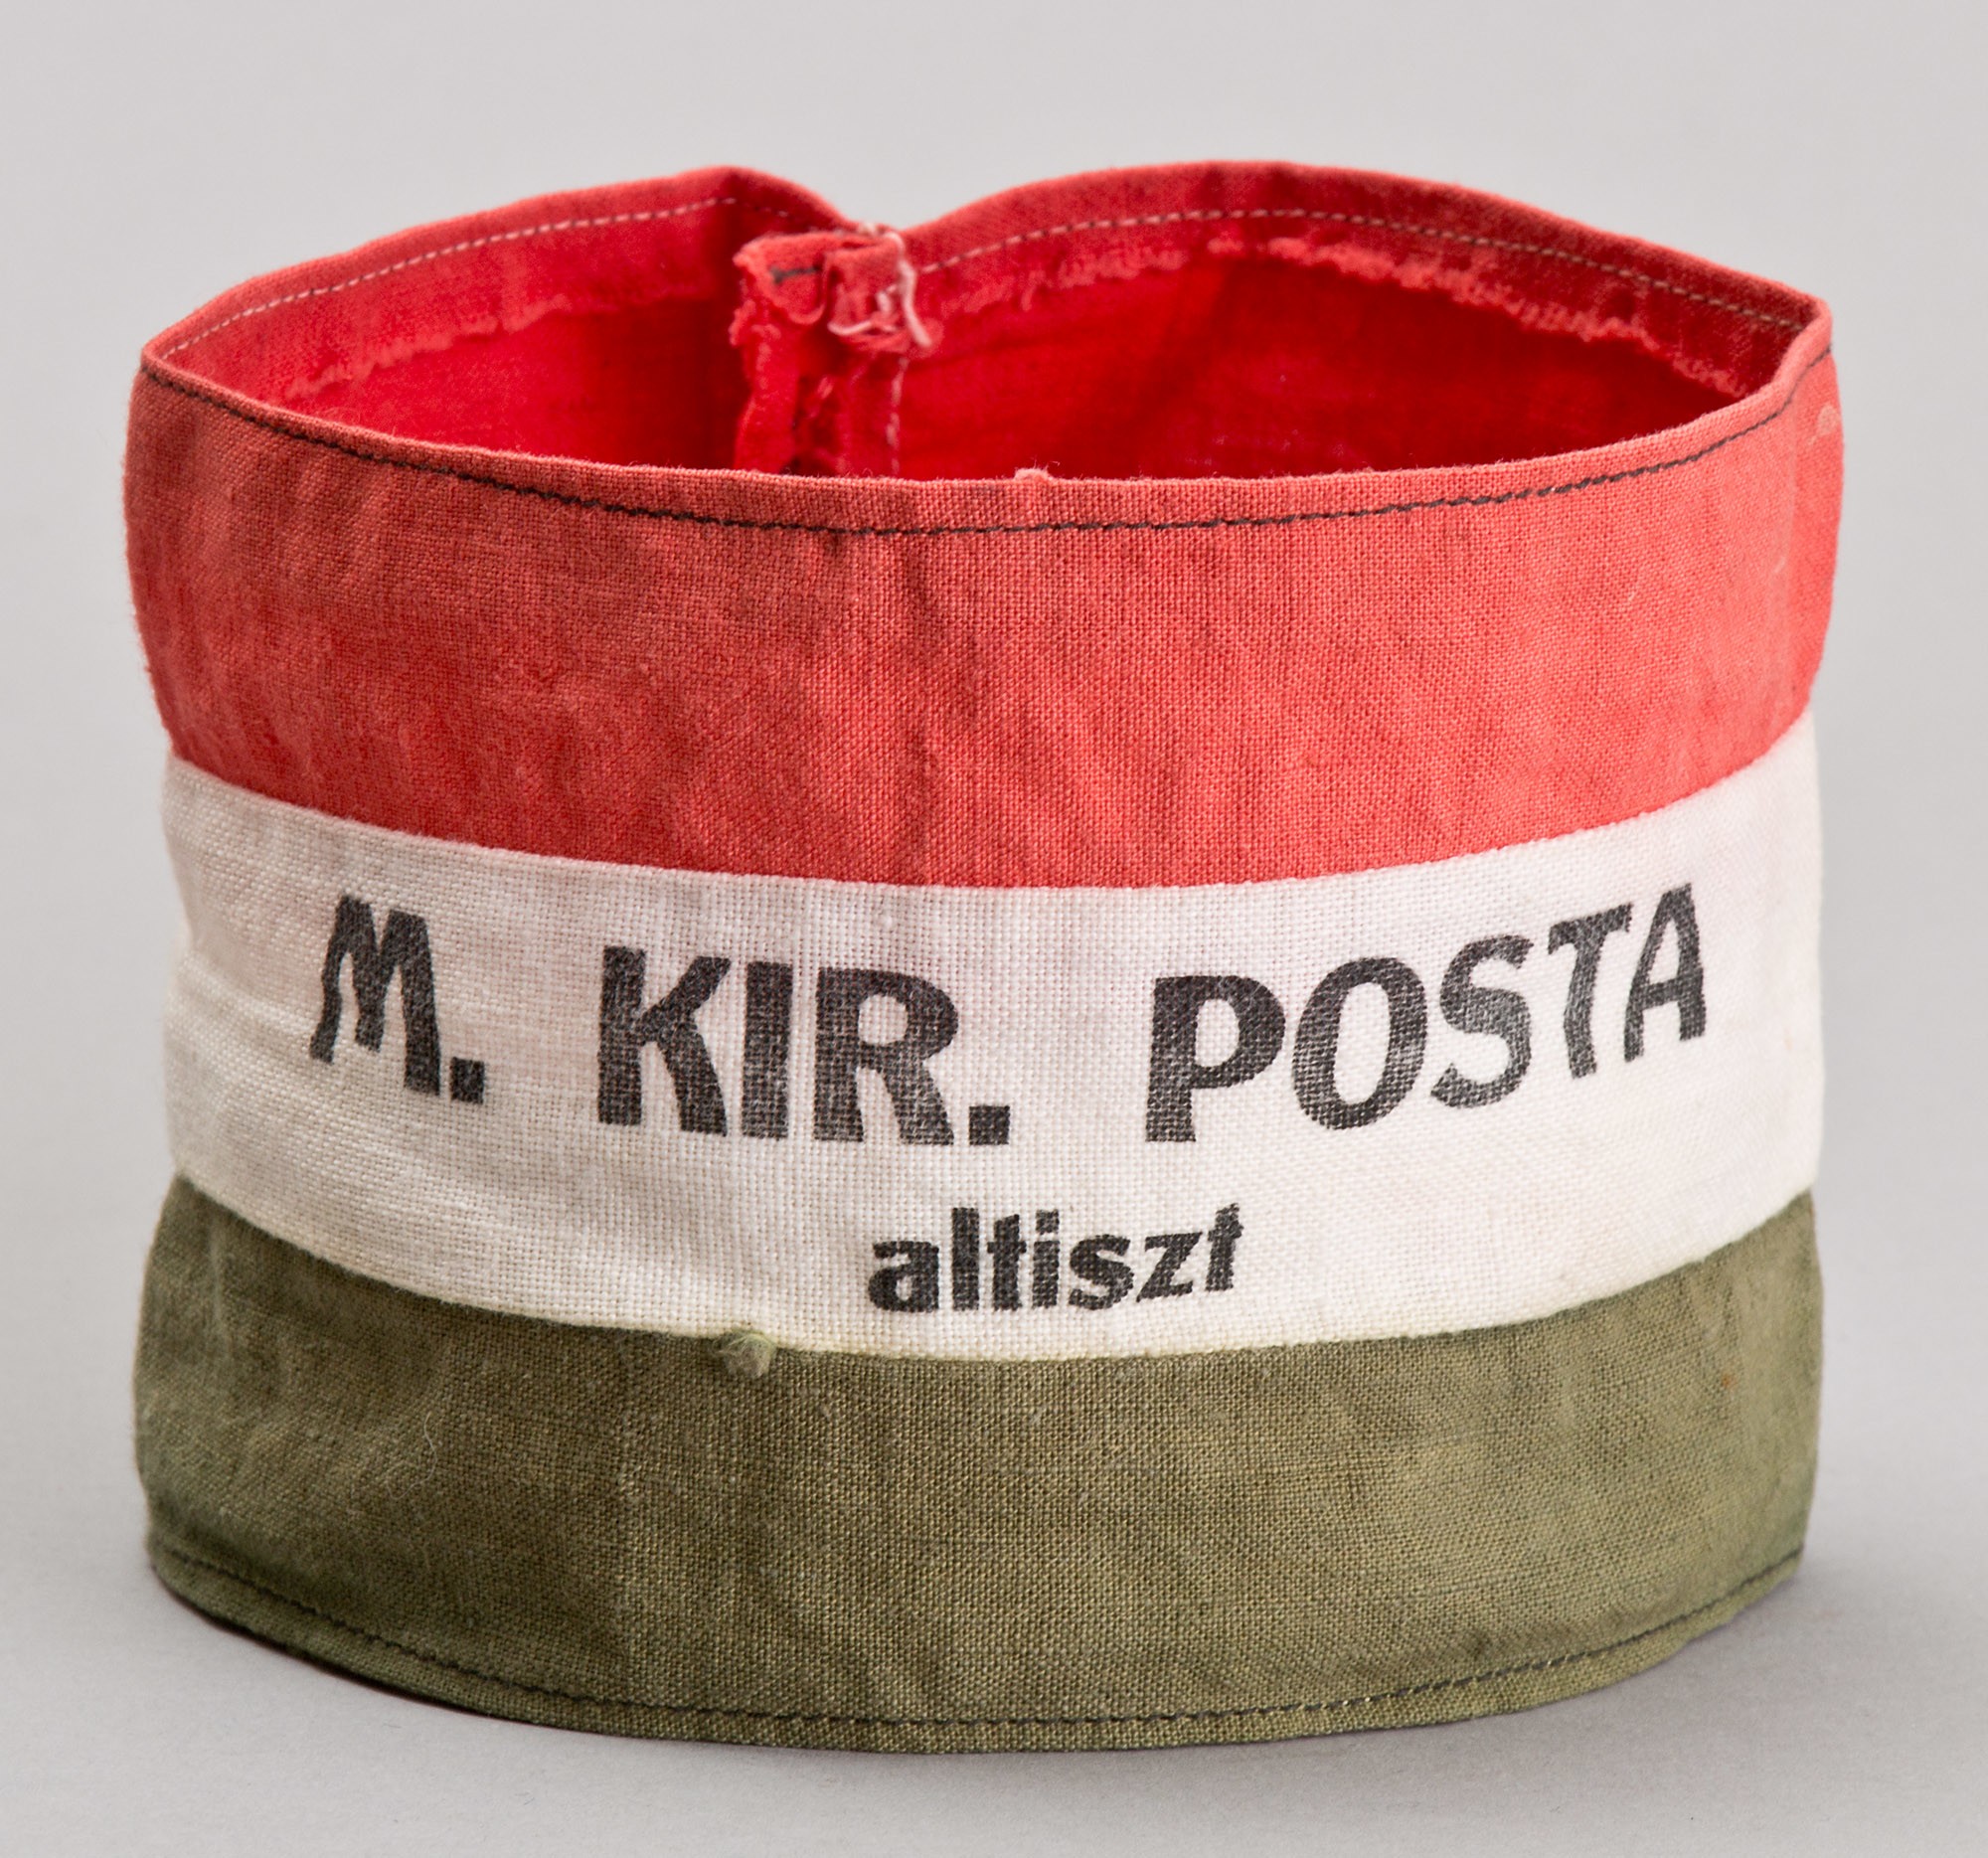 Nemzeti színű karszalag "M.KIR.POSTA altiszt" (Postamúzeum CC BY-NC-SA)